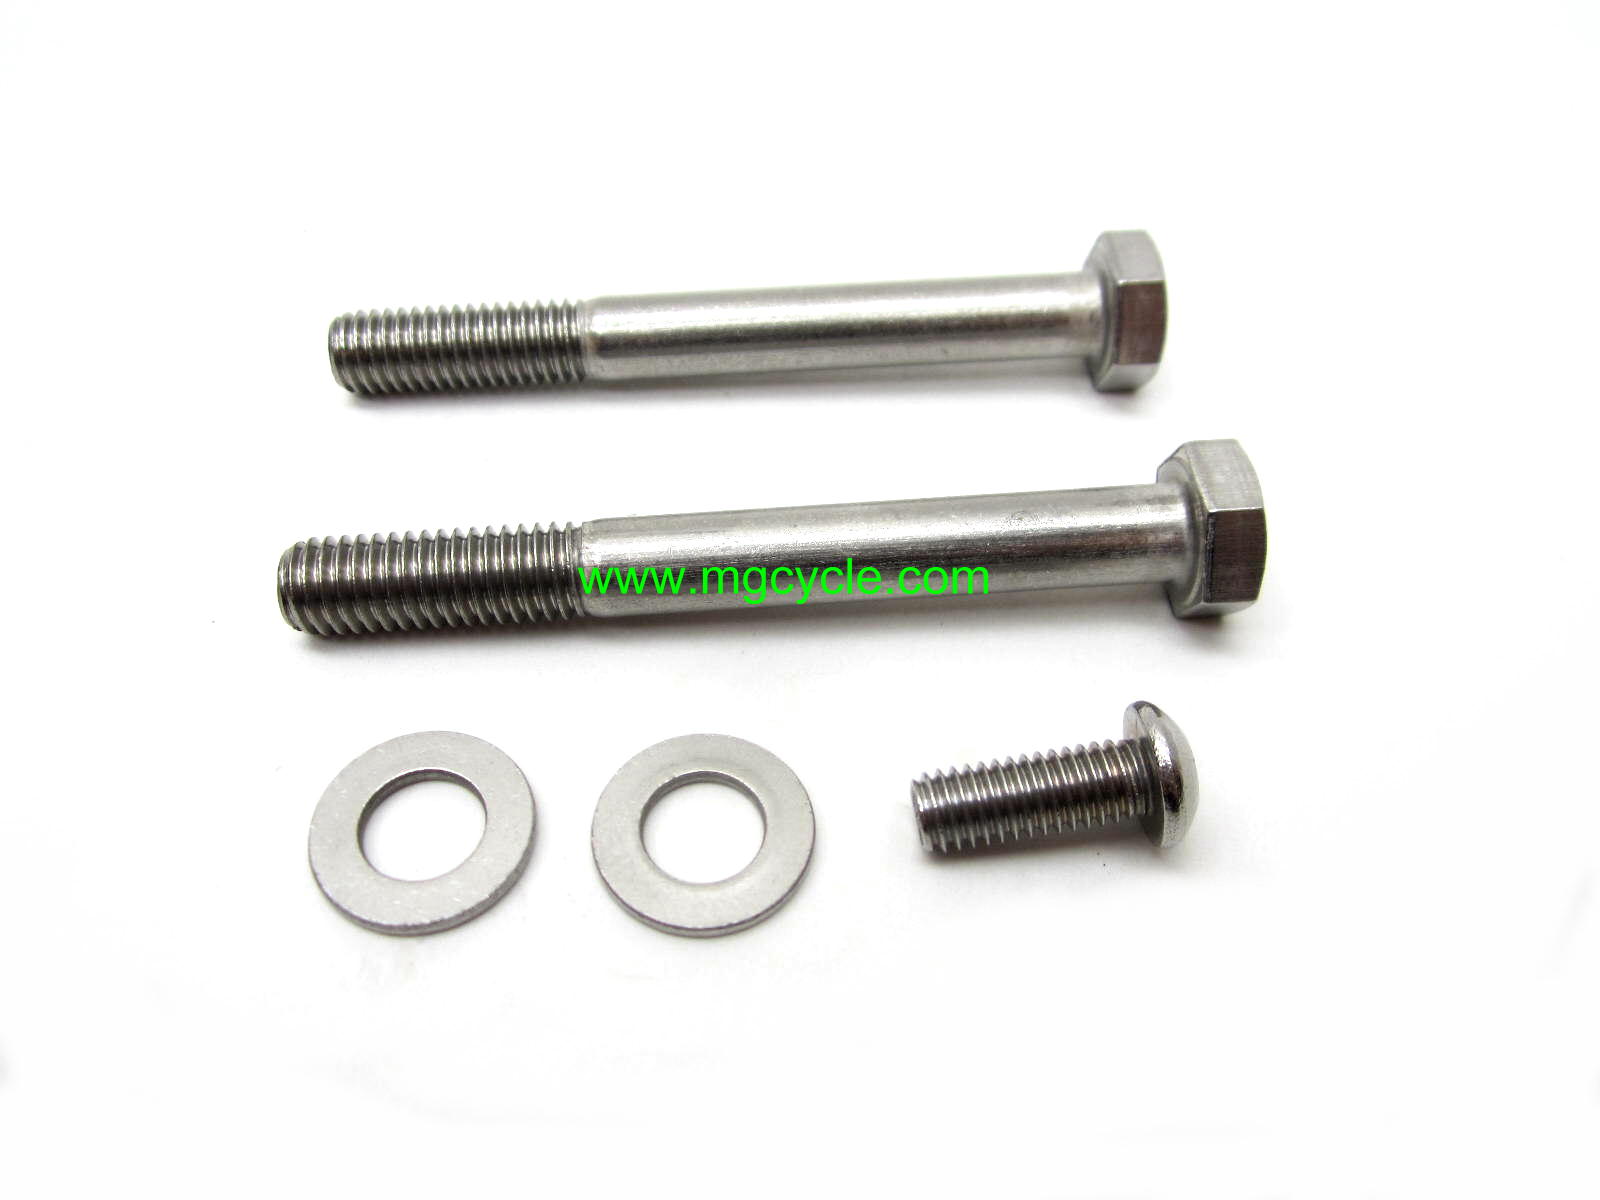 Fastener kit for Valeo starter, stainless steel bolt kit - Click Image to Close